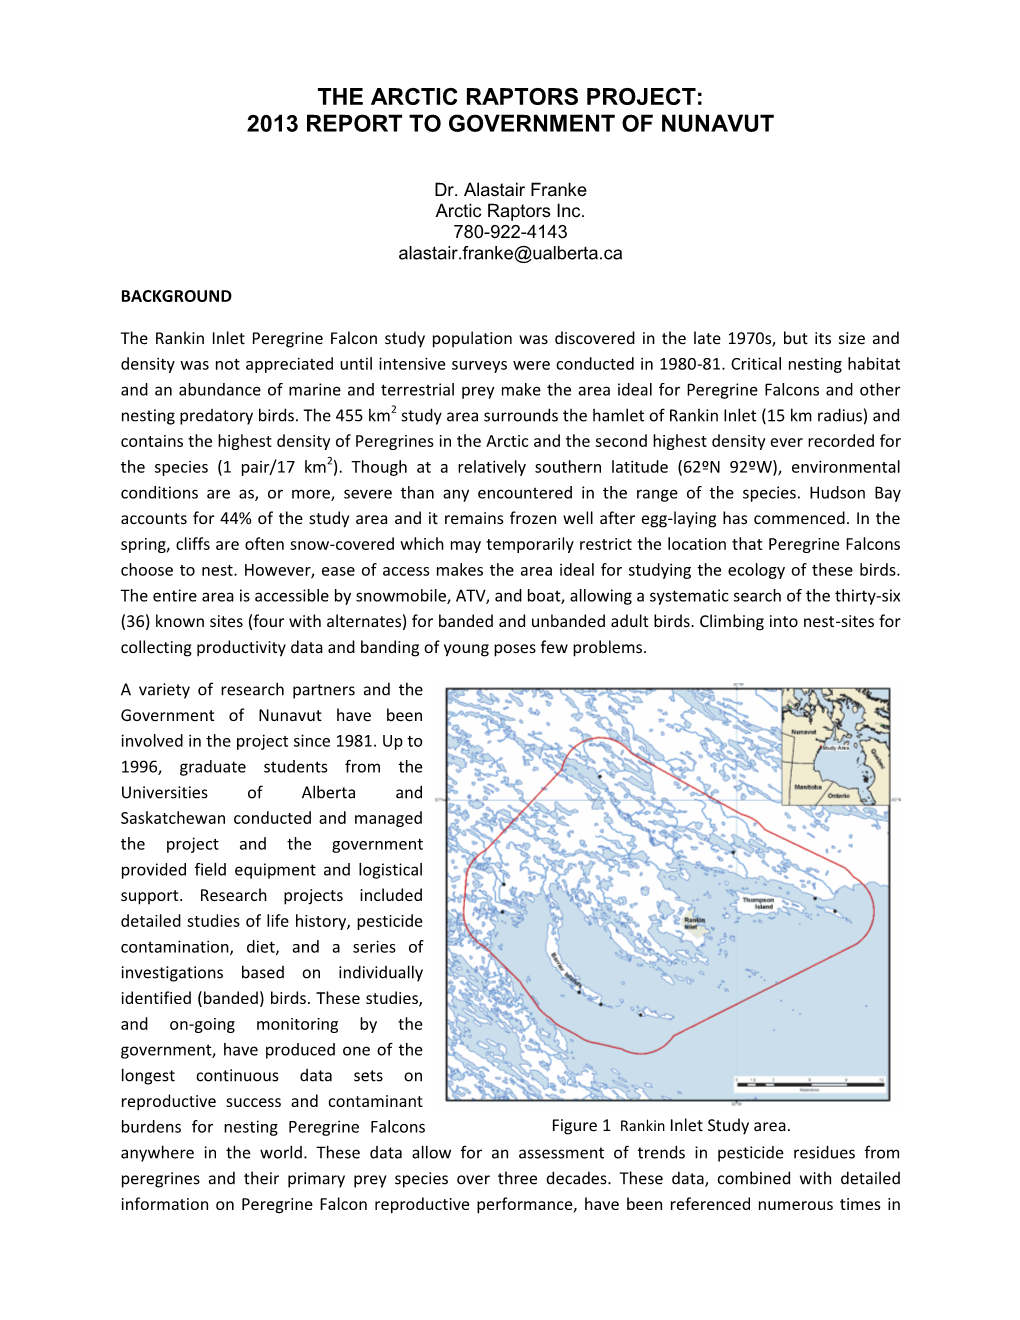 Arctic Raptors Project (2013 Report)